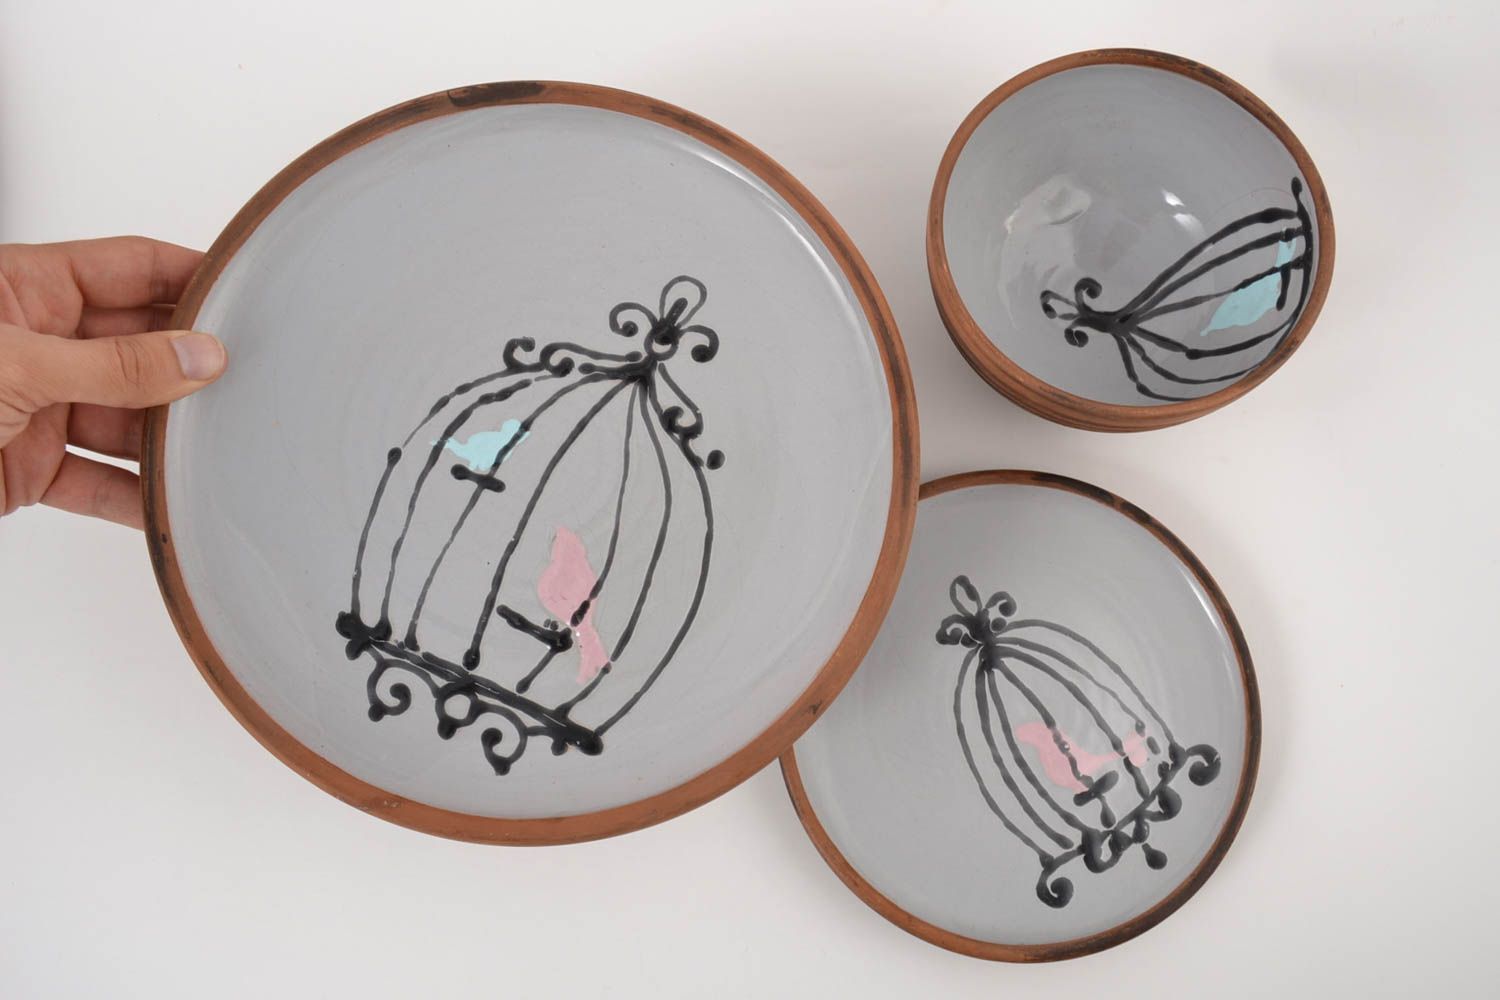 Ceramic designer plates unusual handmade kitchenware 3 stylish lovely plates photo 3